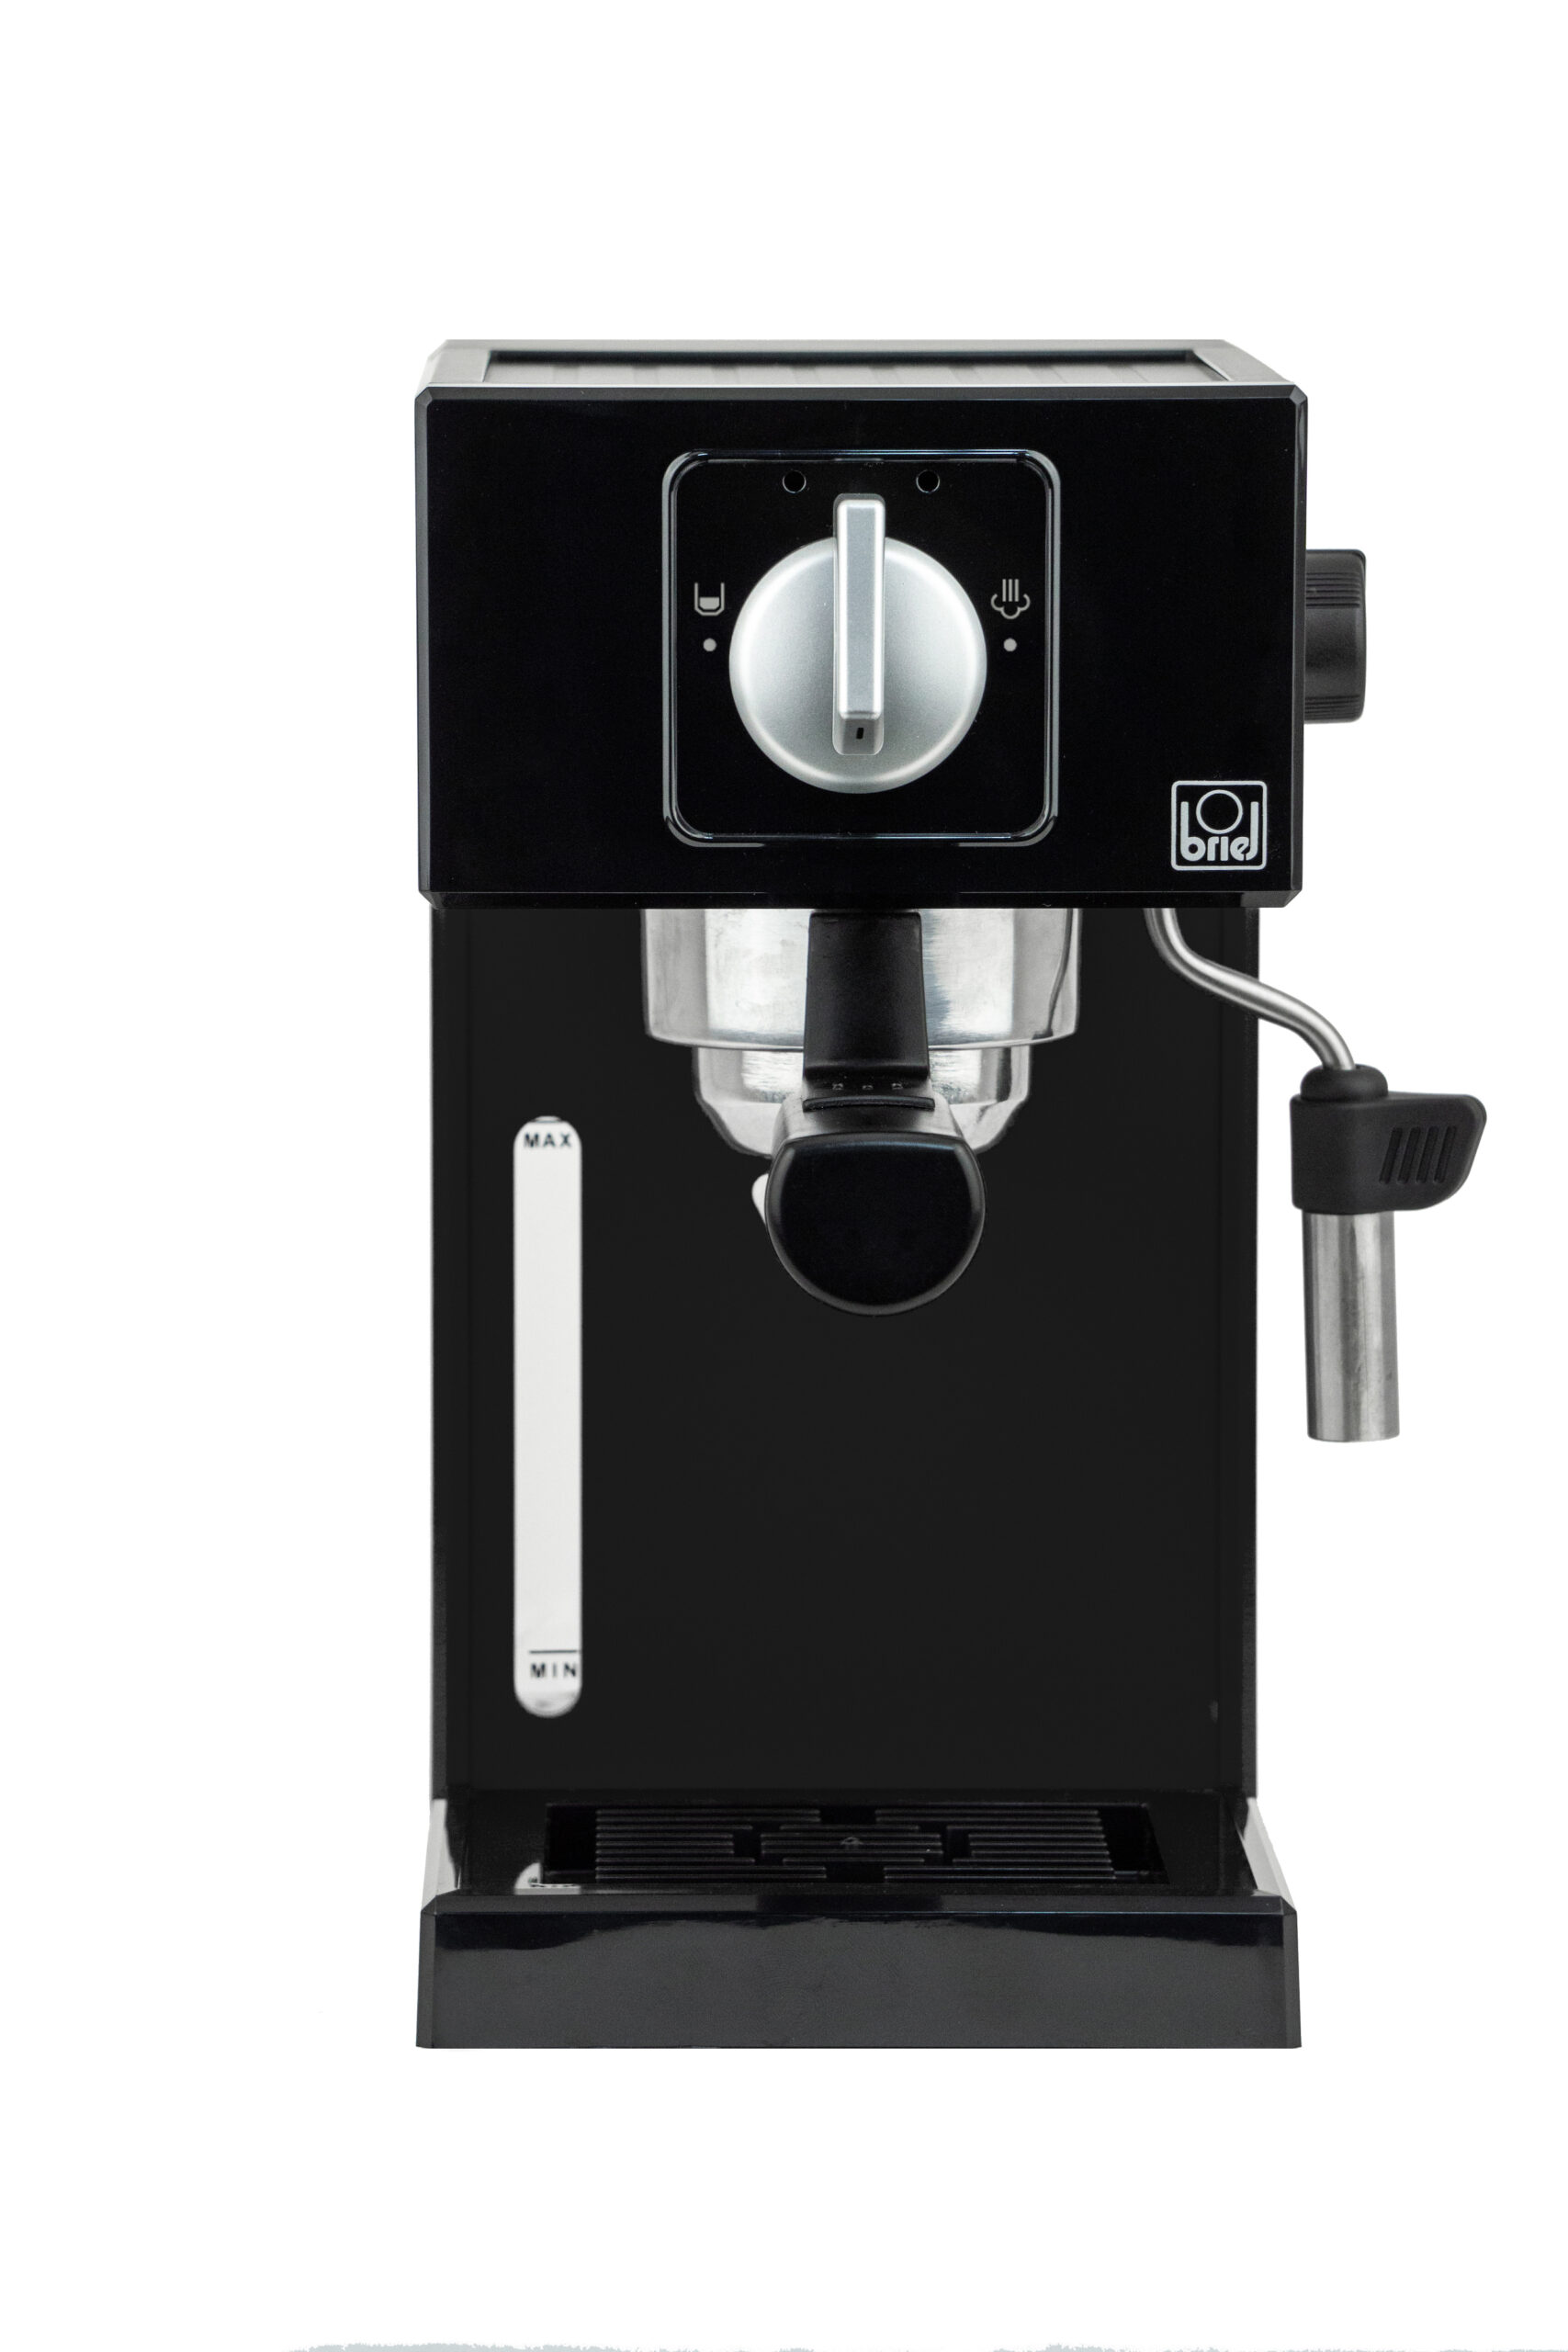 Maquina-cafe-espresso-A1-MANUAL-BLACK-3-scaled-1.jpg